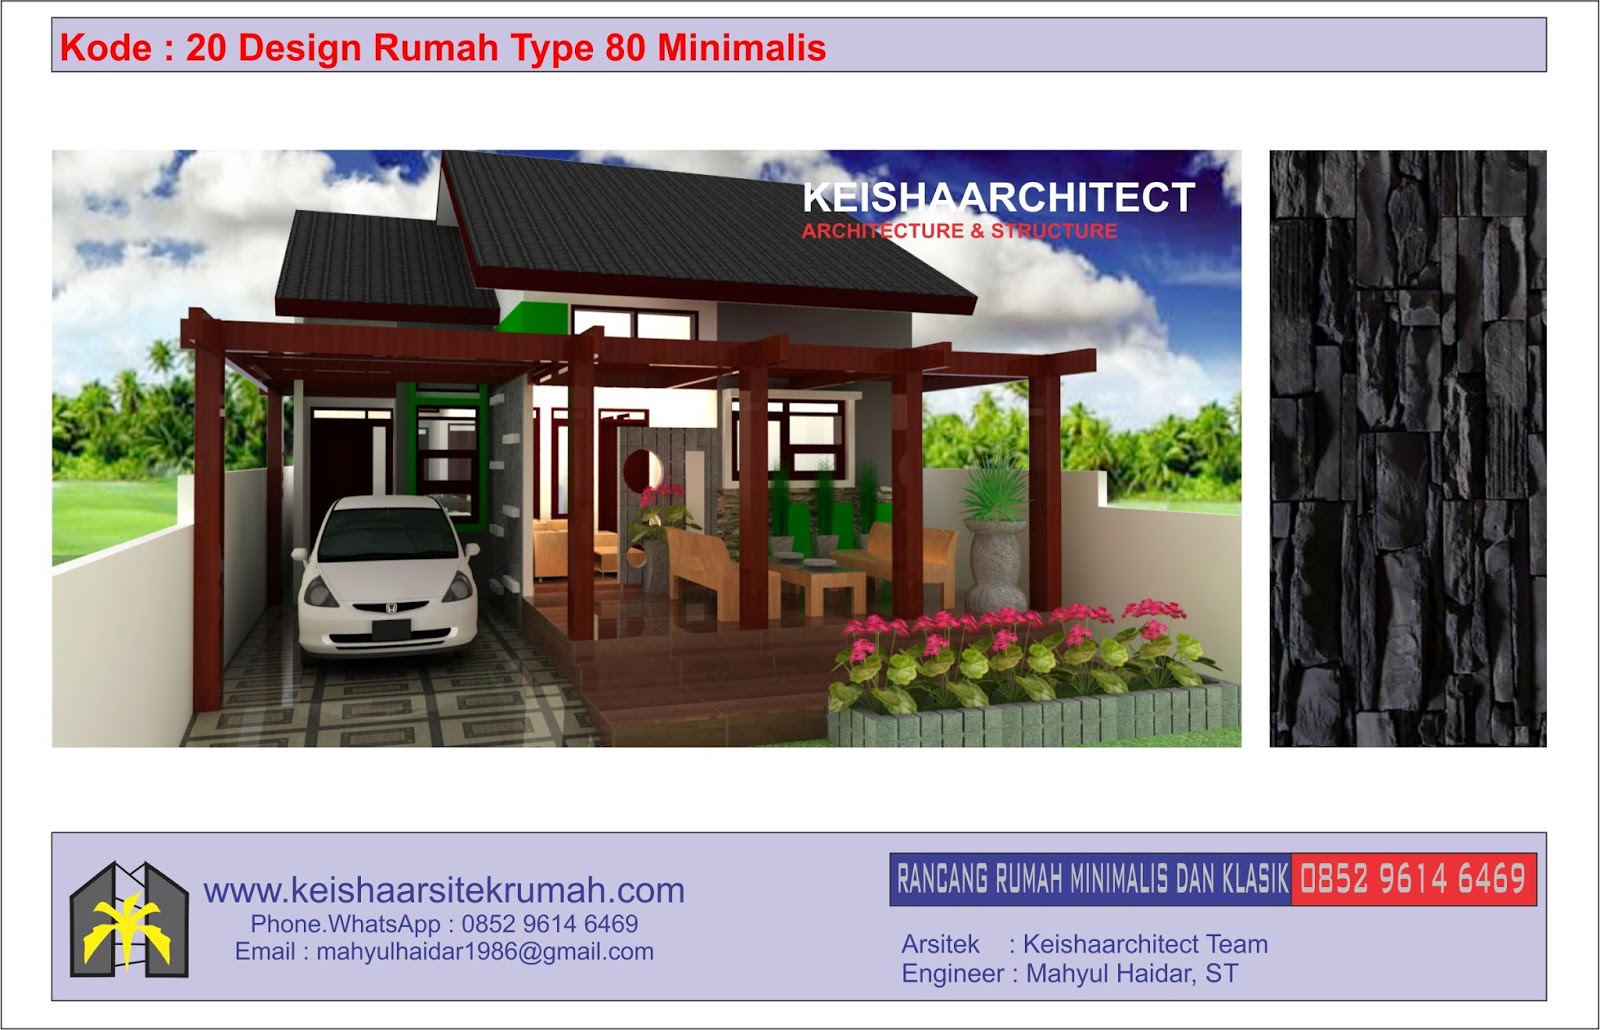 Kode 20 Design Rumah Type 80 Lokasi Meulaboh Aceh Barat